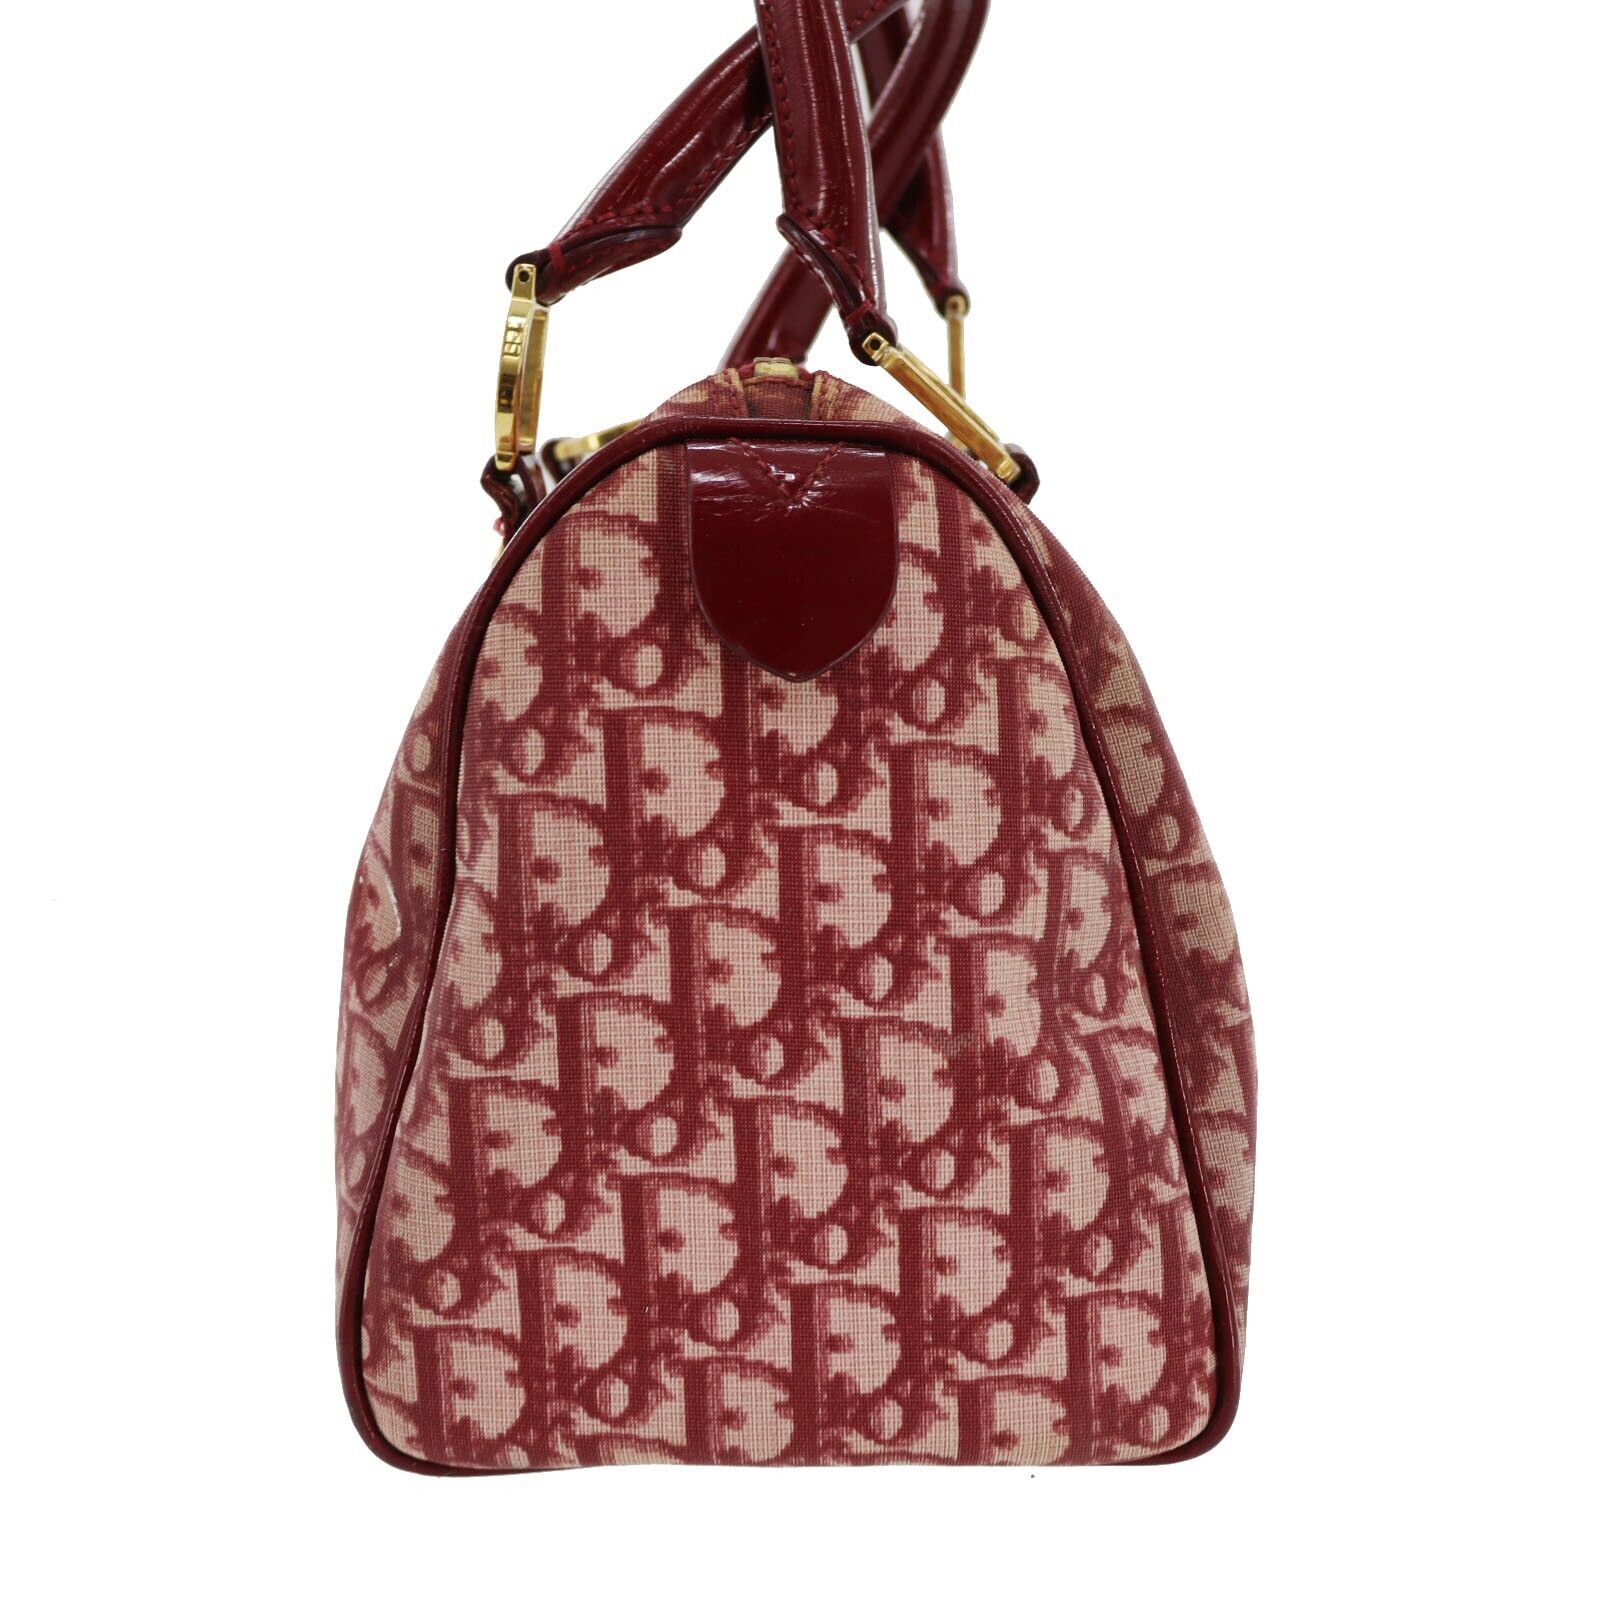 Christian Dior Trotter Shoulder Bag Canvas Leather Bordeaux Purse